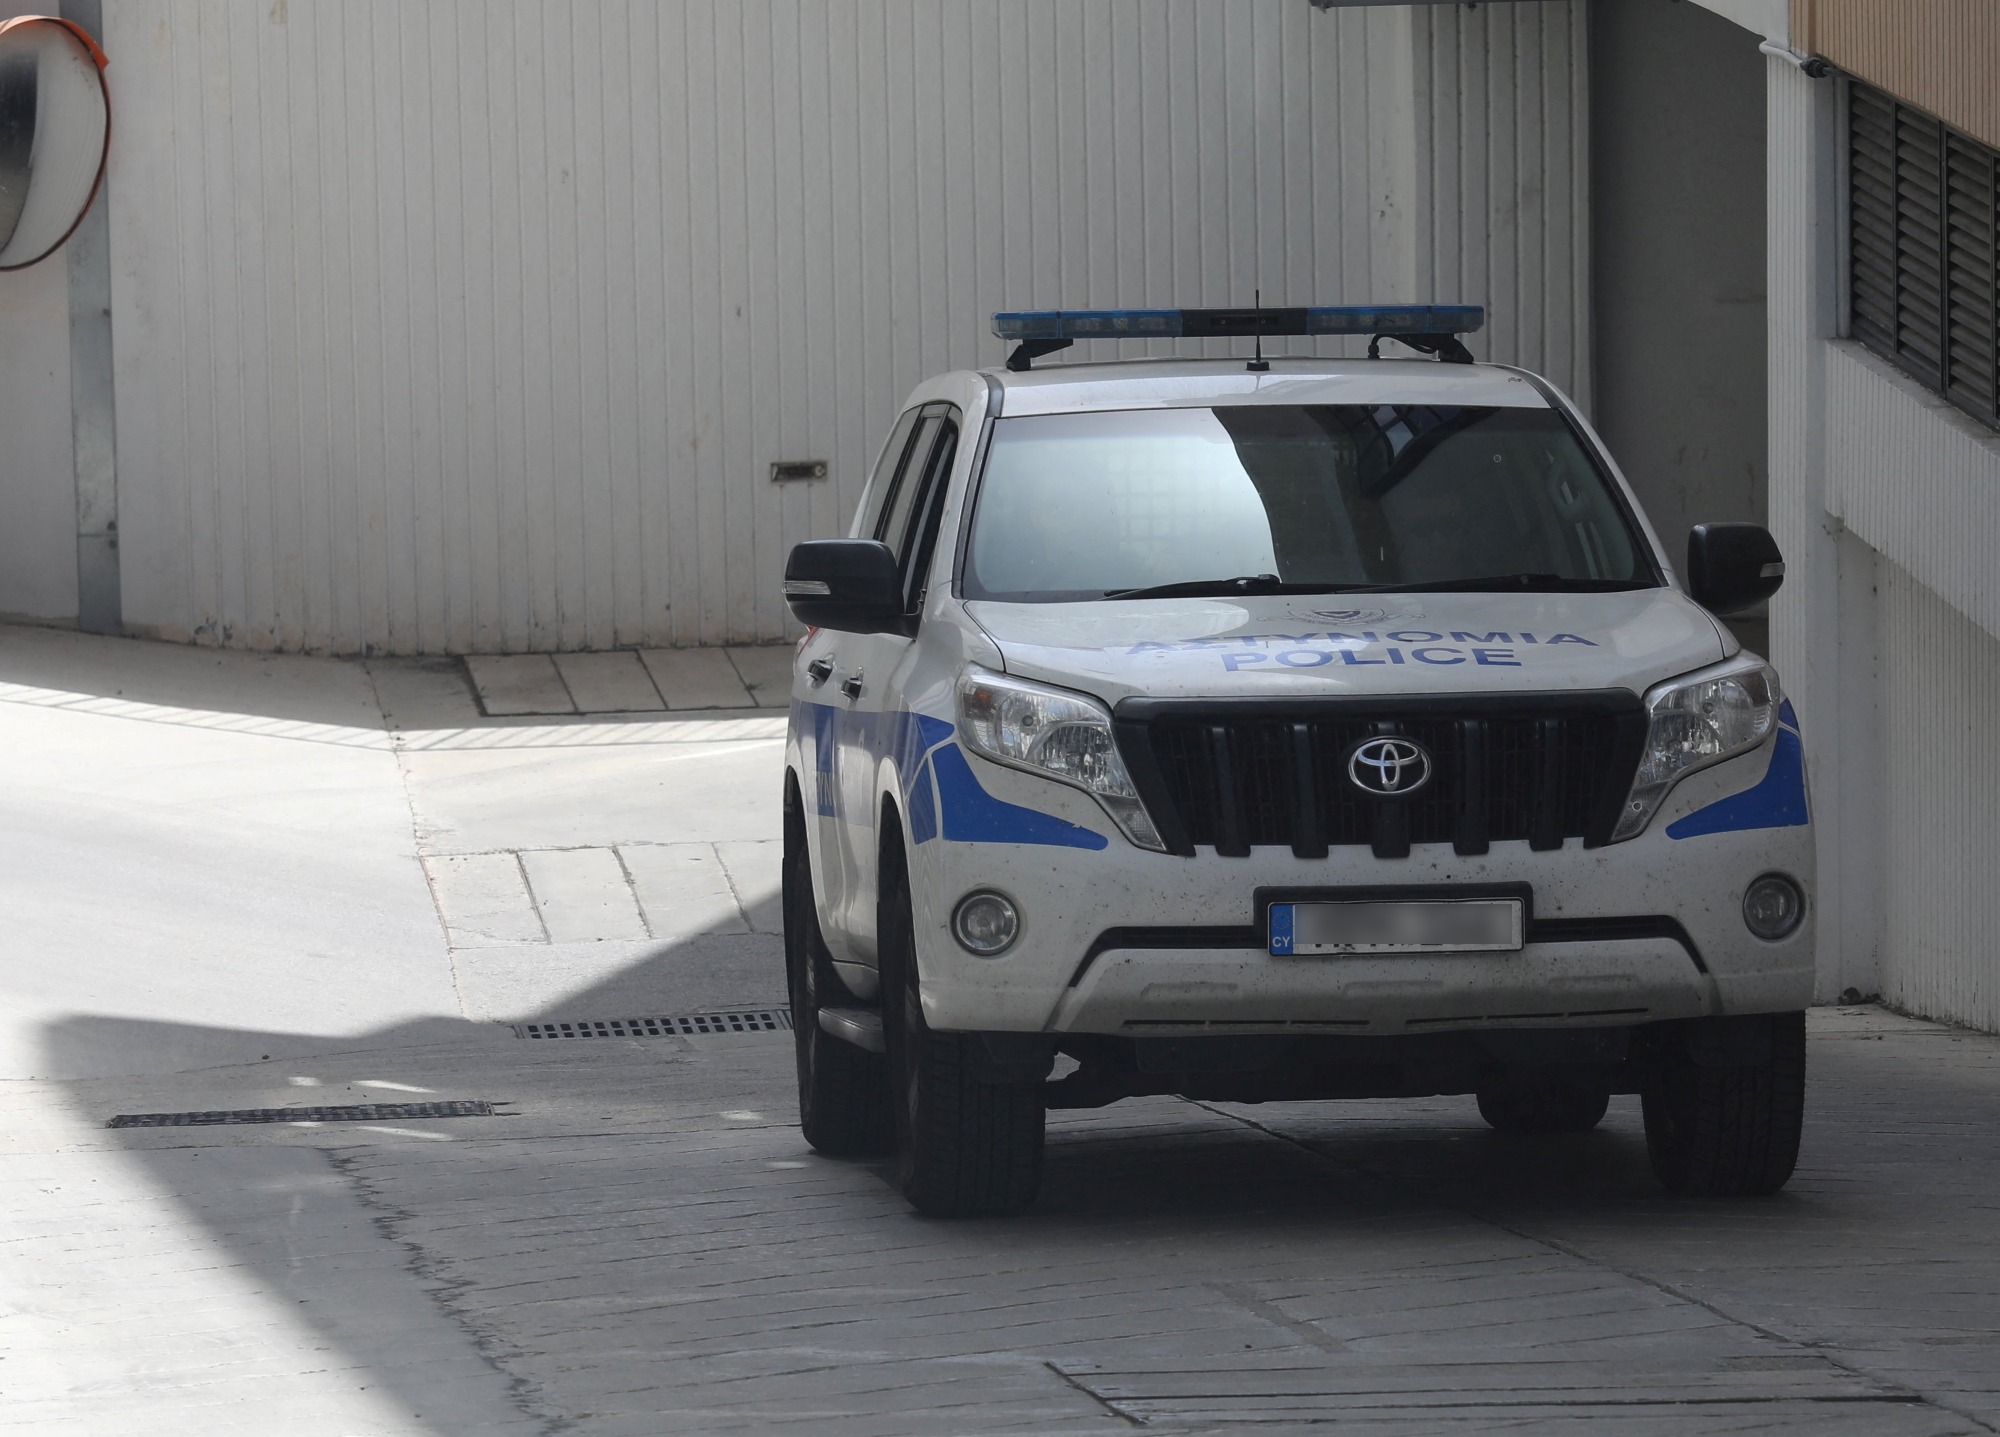 Κύπρος: Άγριο έγκλημα στην Λάρνακα – Βρέθηκε νεκρός μέσα σε συνεργείο αυτοκινήτων, αναζητείται ο ιδιοκτήτης